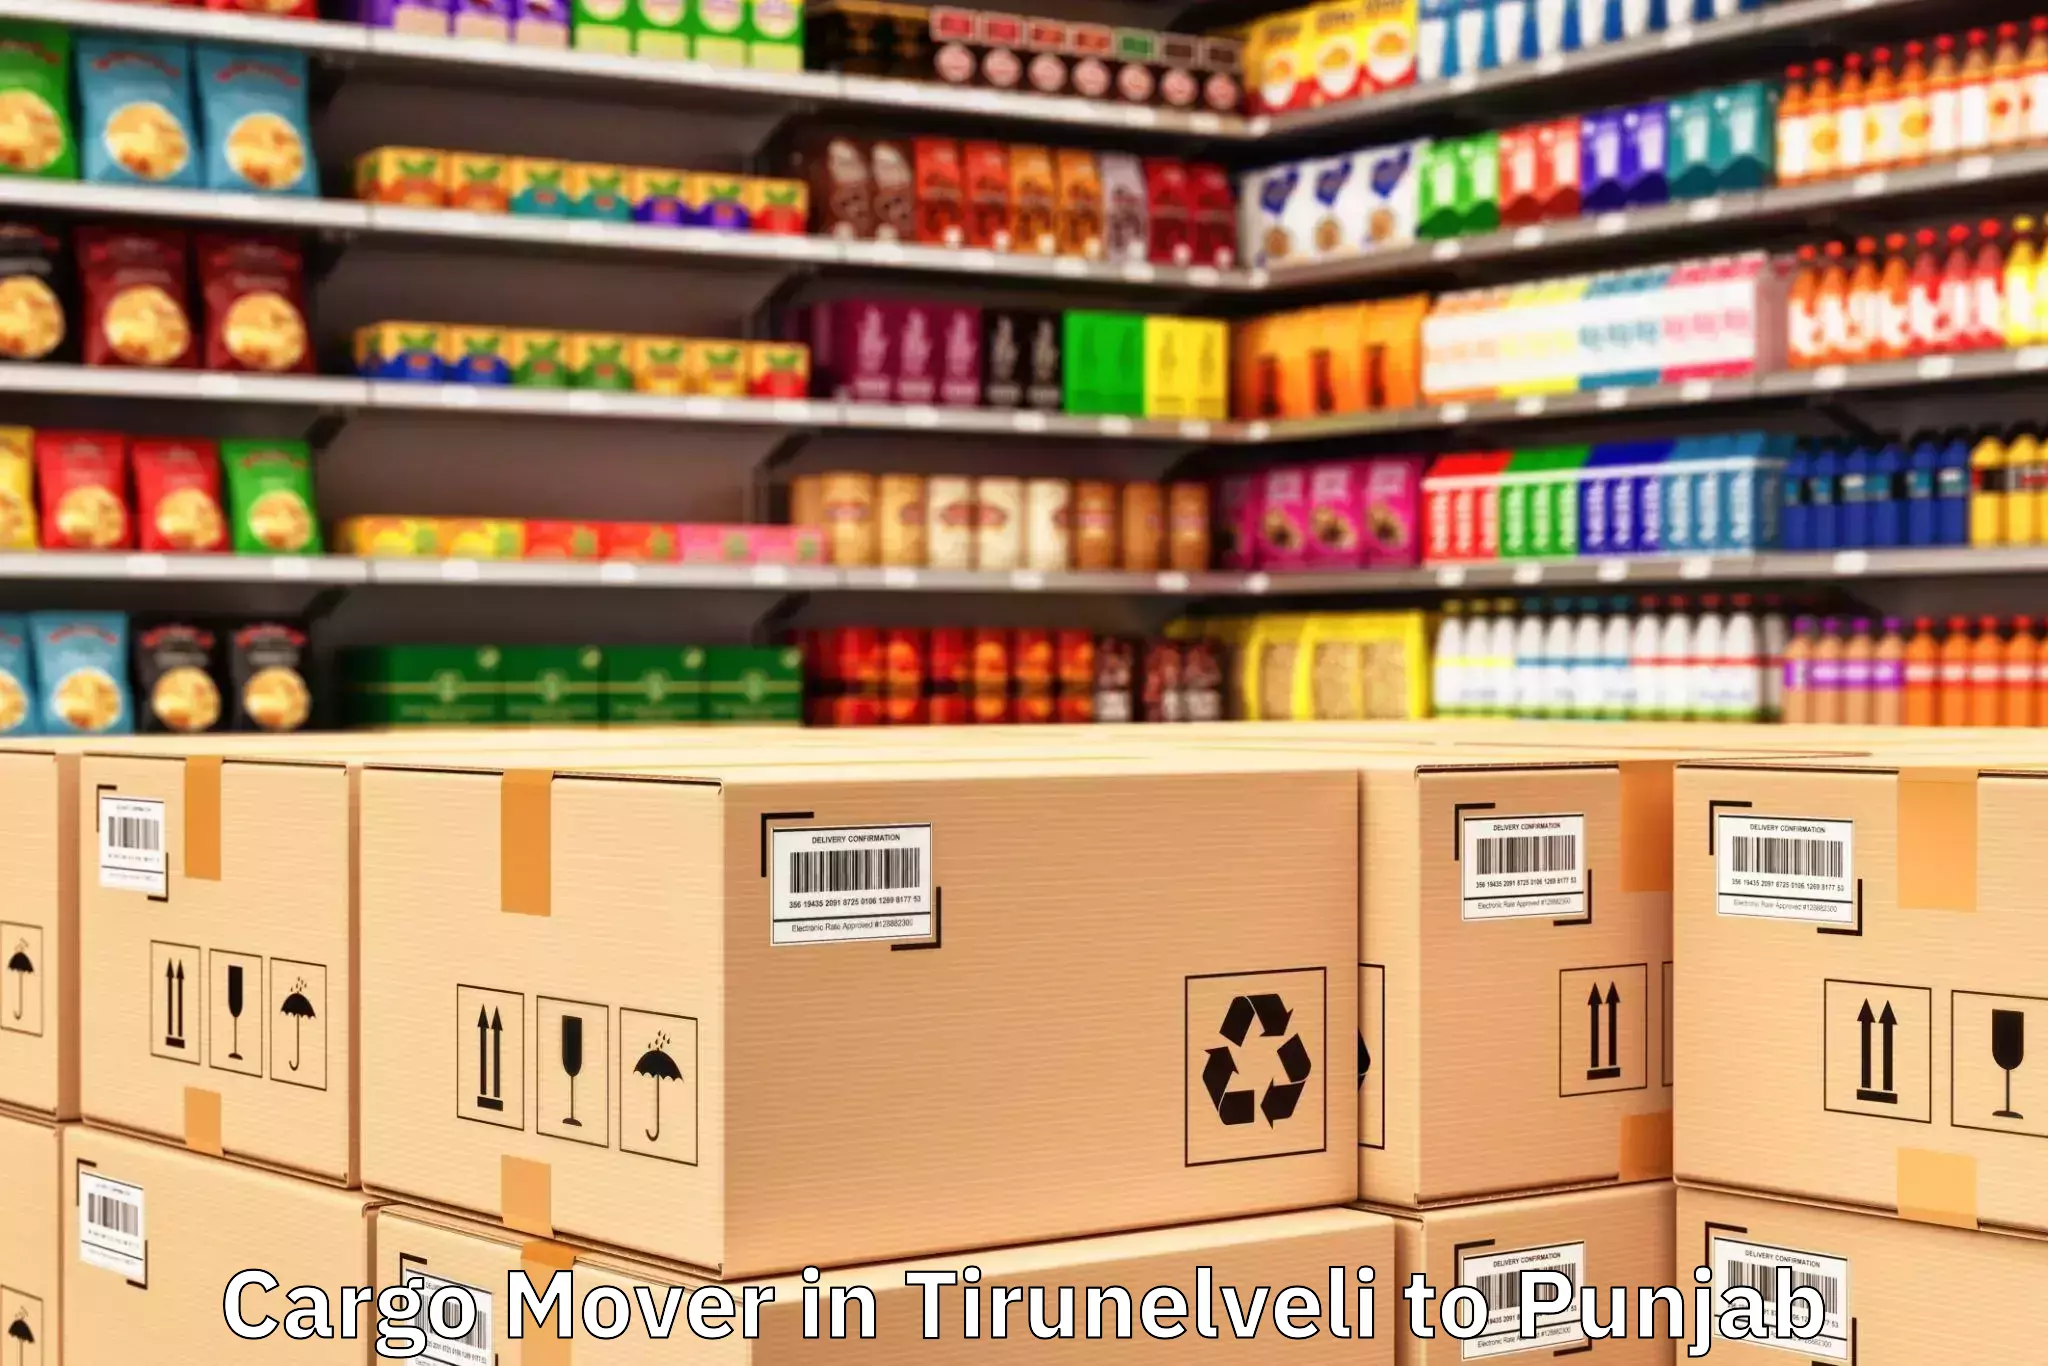 Professional Tirunelveli to Ferozepore Cargo Mover